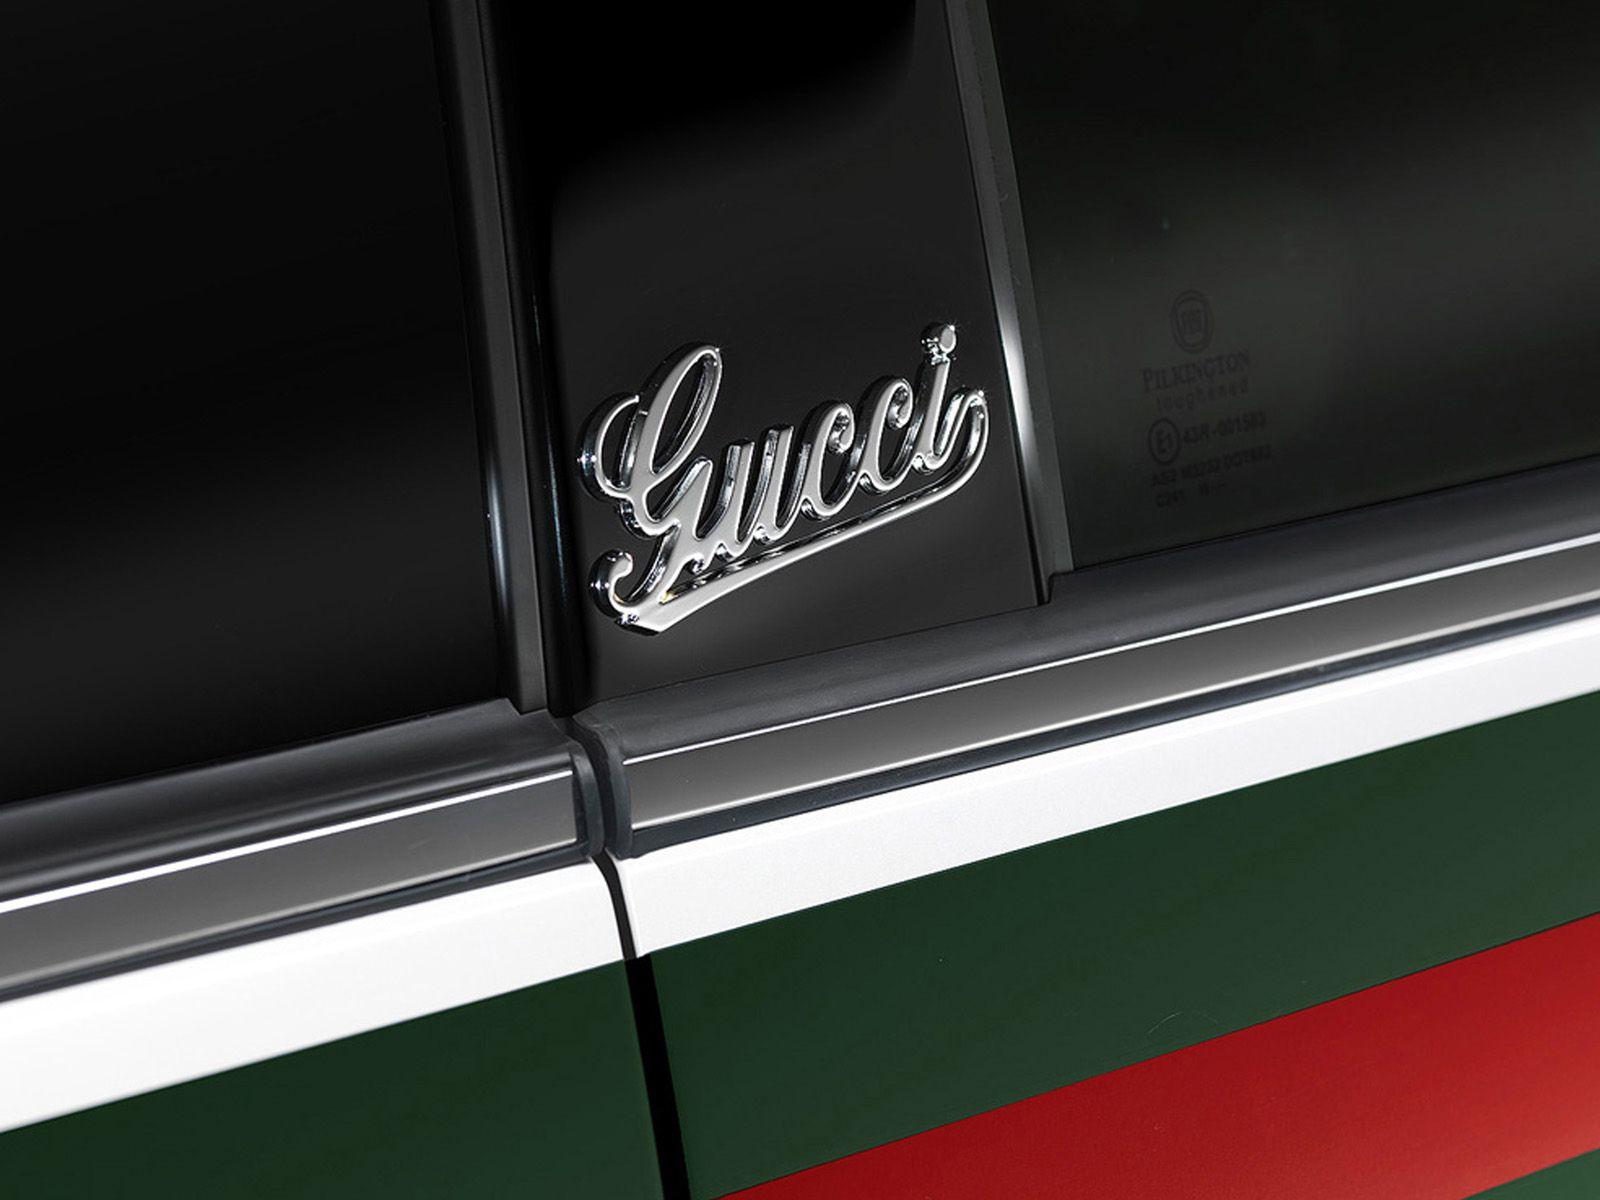 Fiat 500 by Gucci wallpaper. Fiat 500